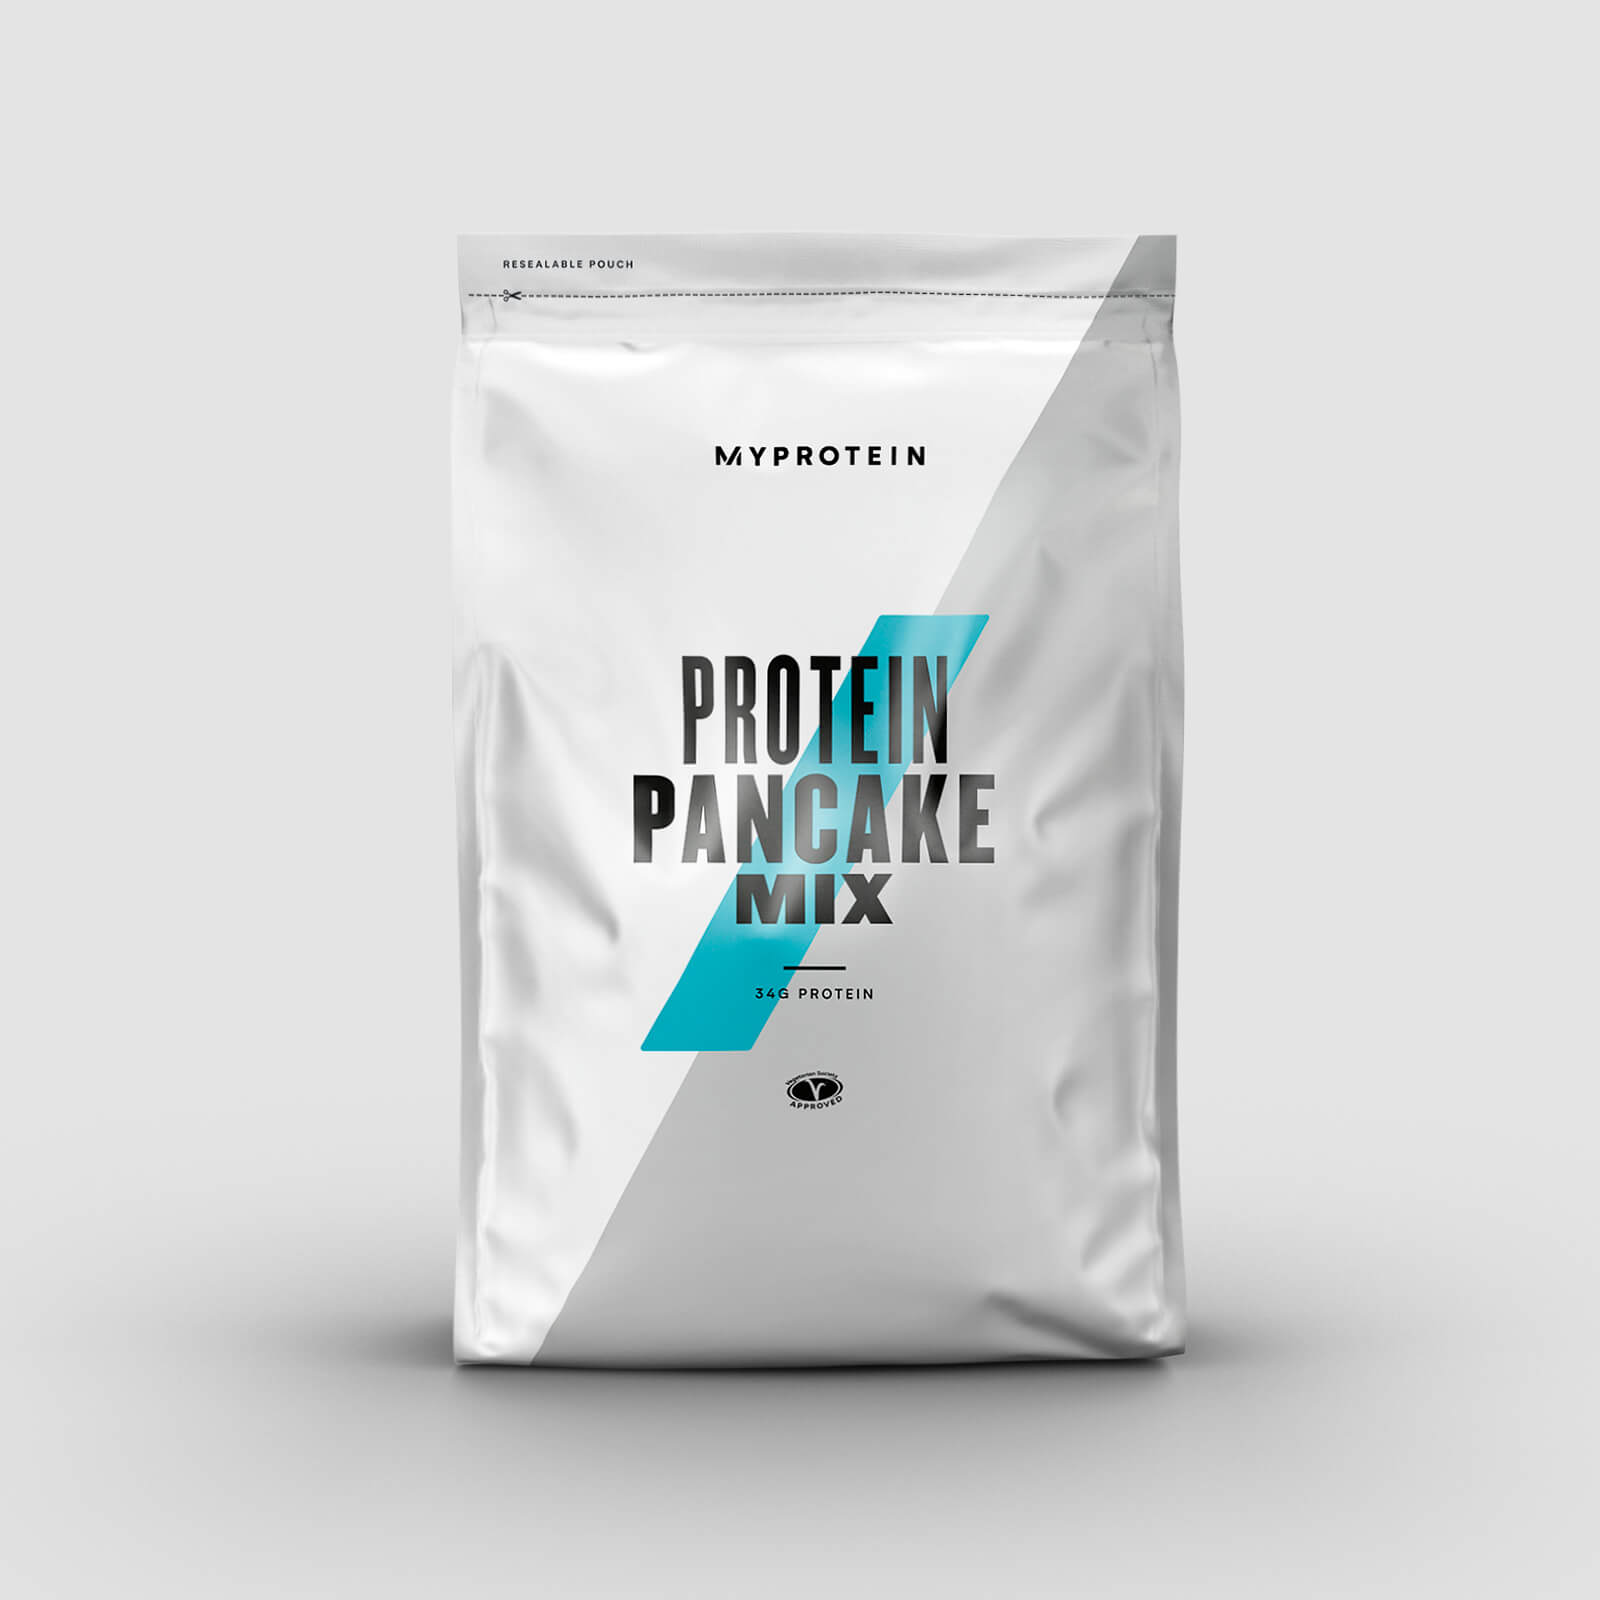 Myprotein Protein Pancake Mix - 500g - Golden Syrup